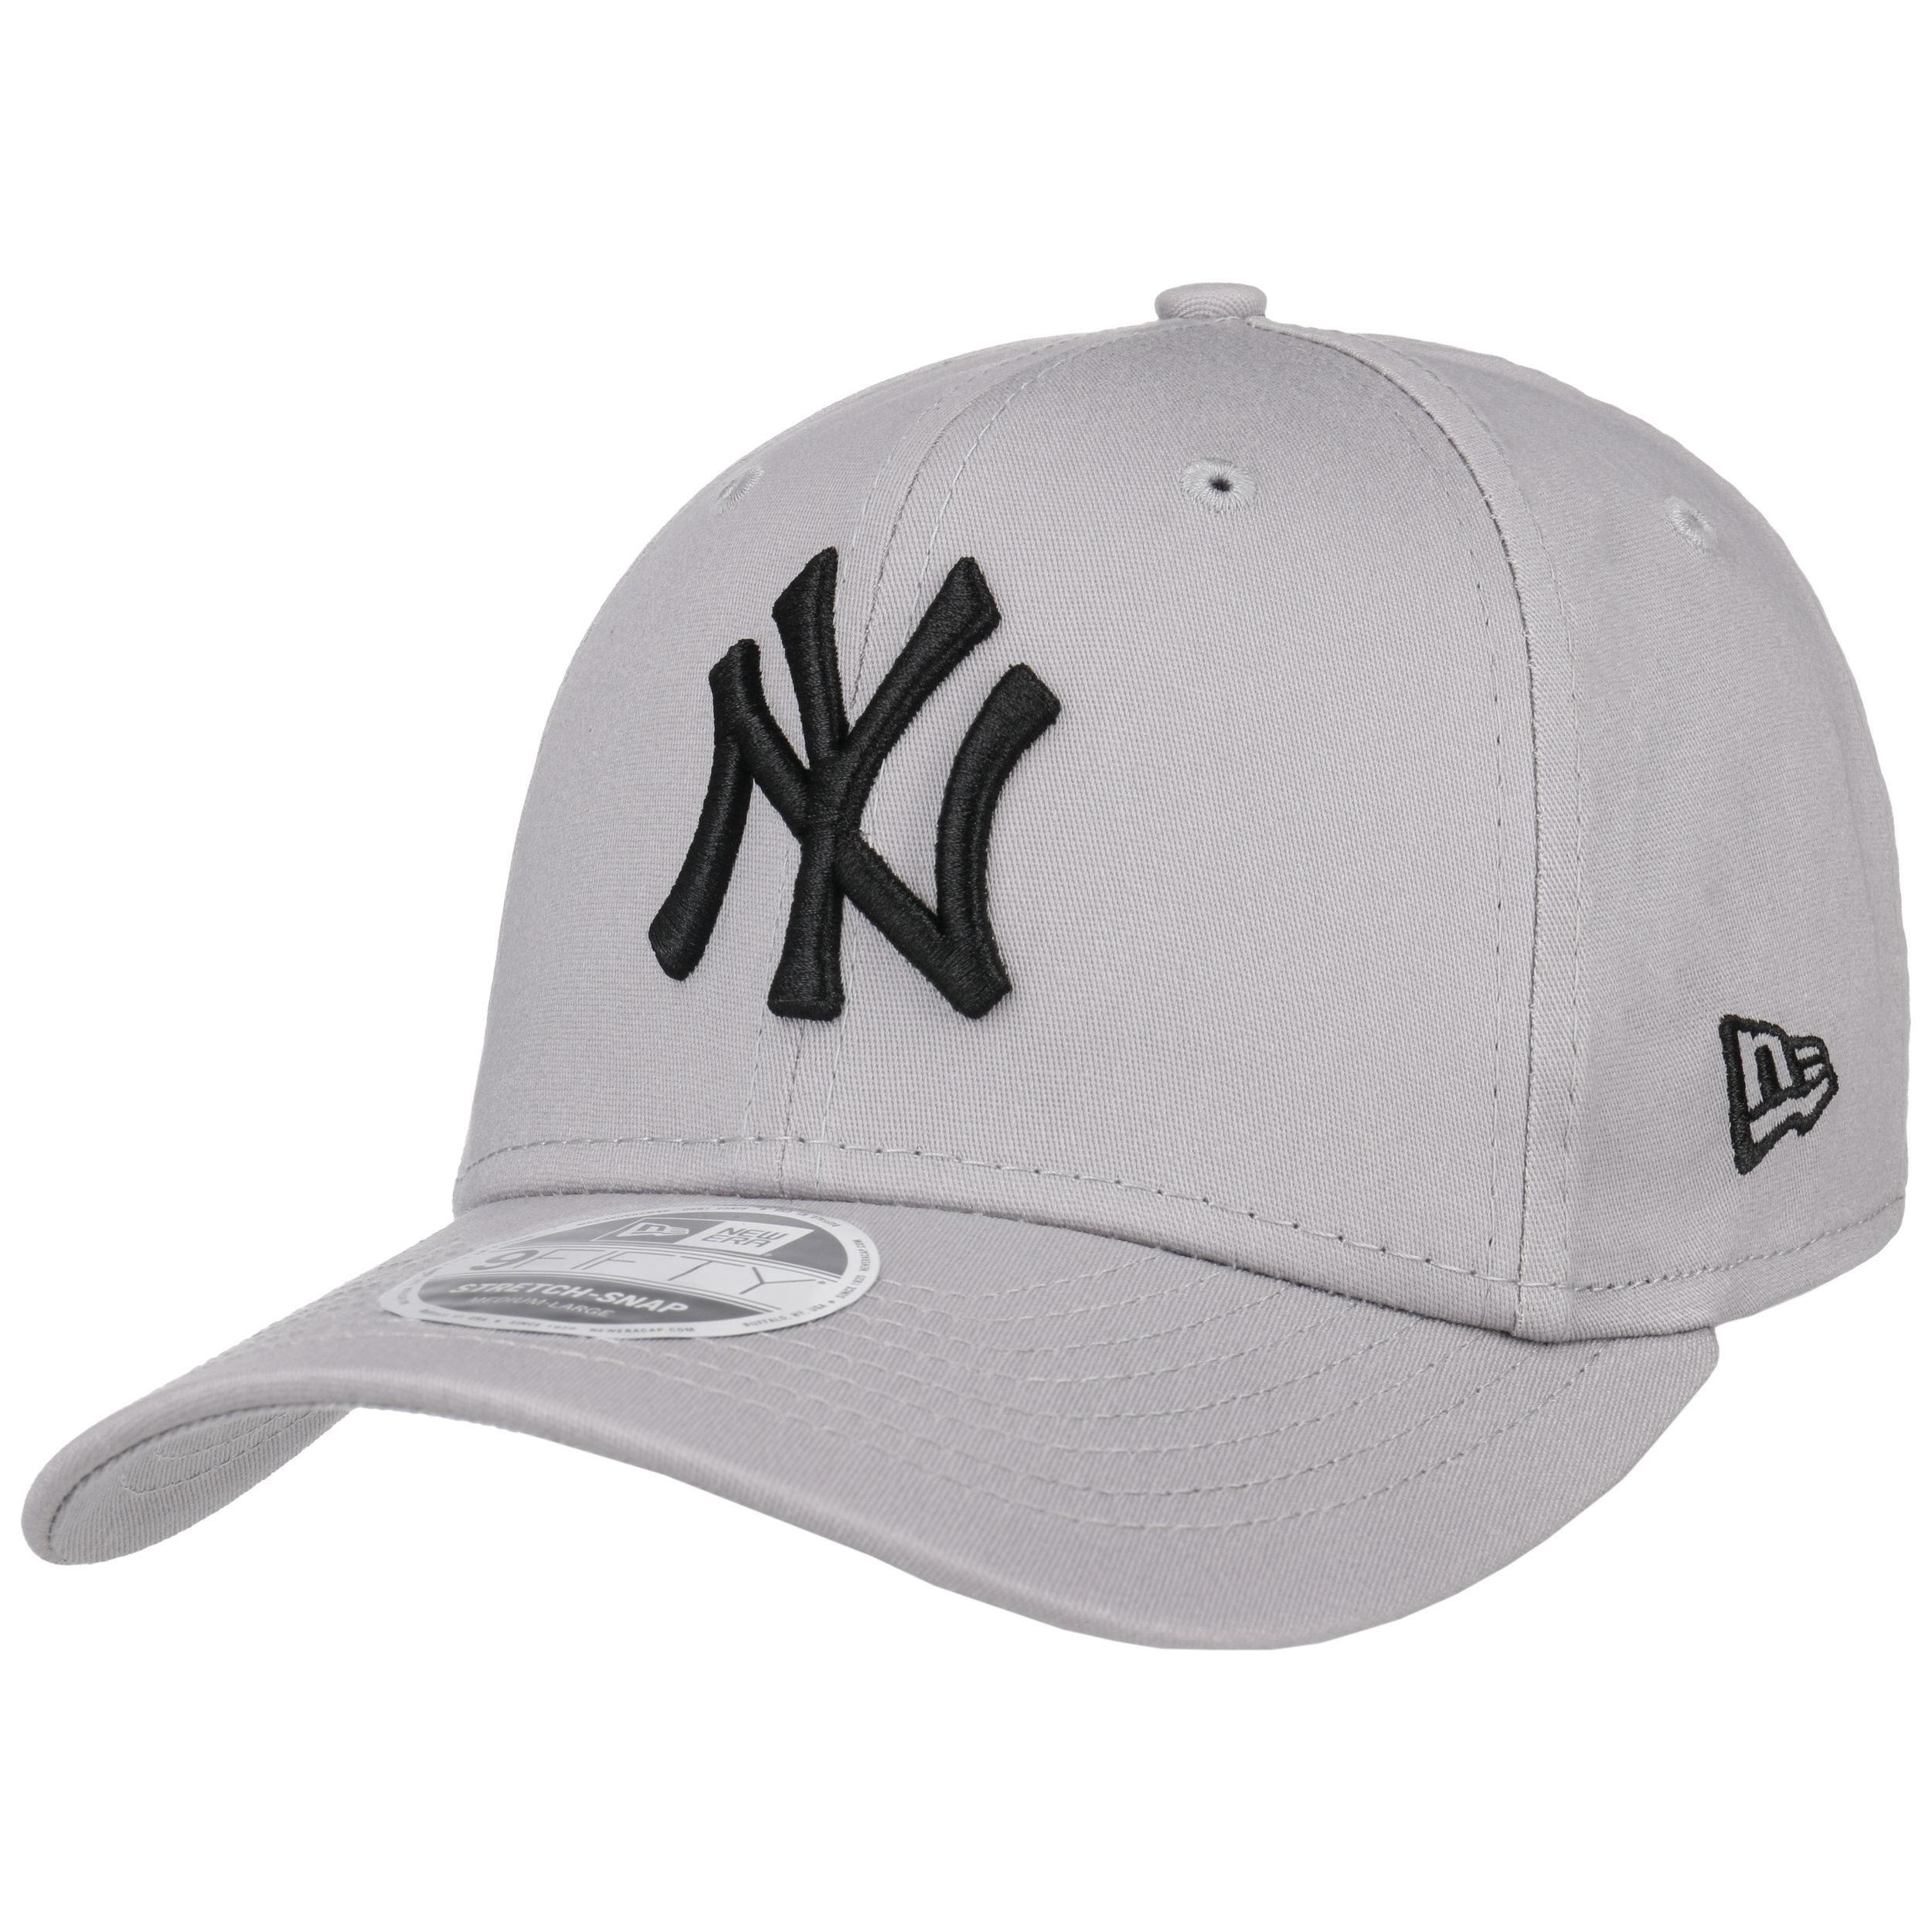 New era Casquette New York Yankees 9 Fifty Noir